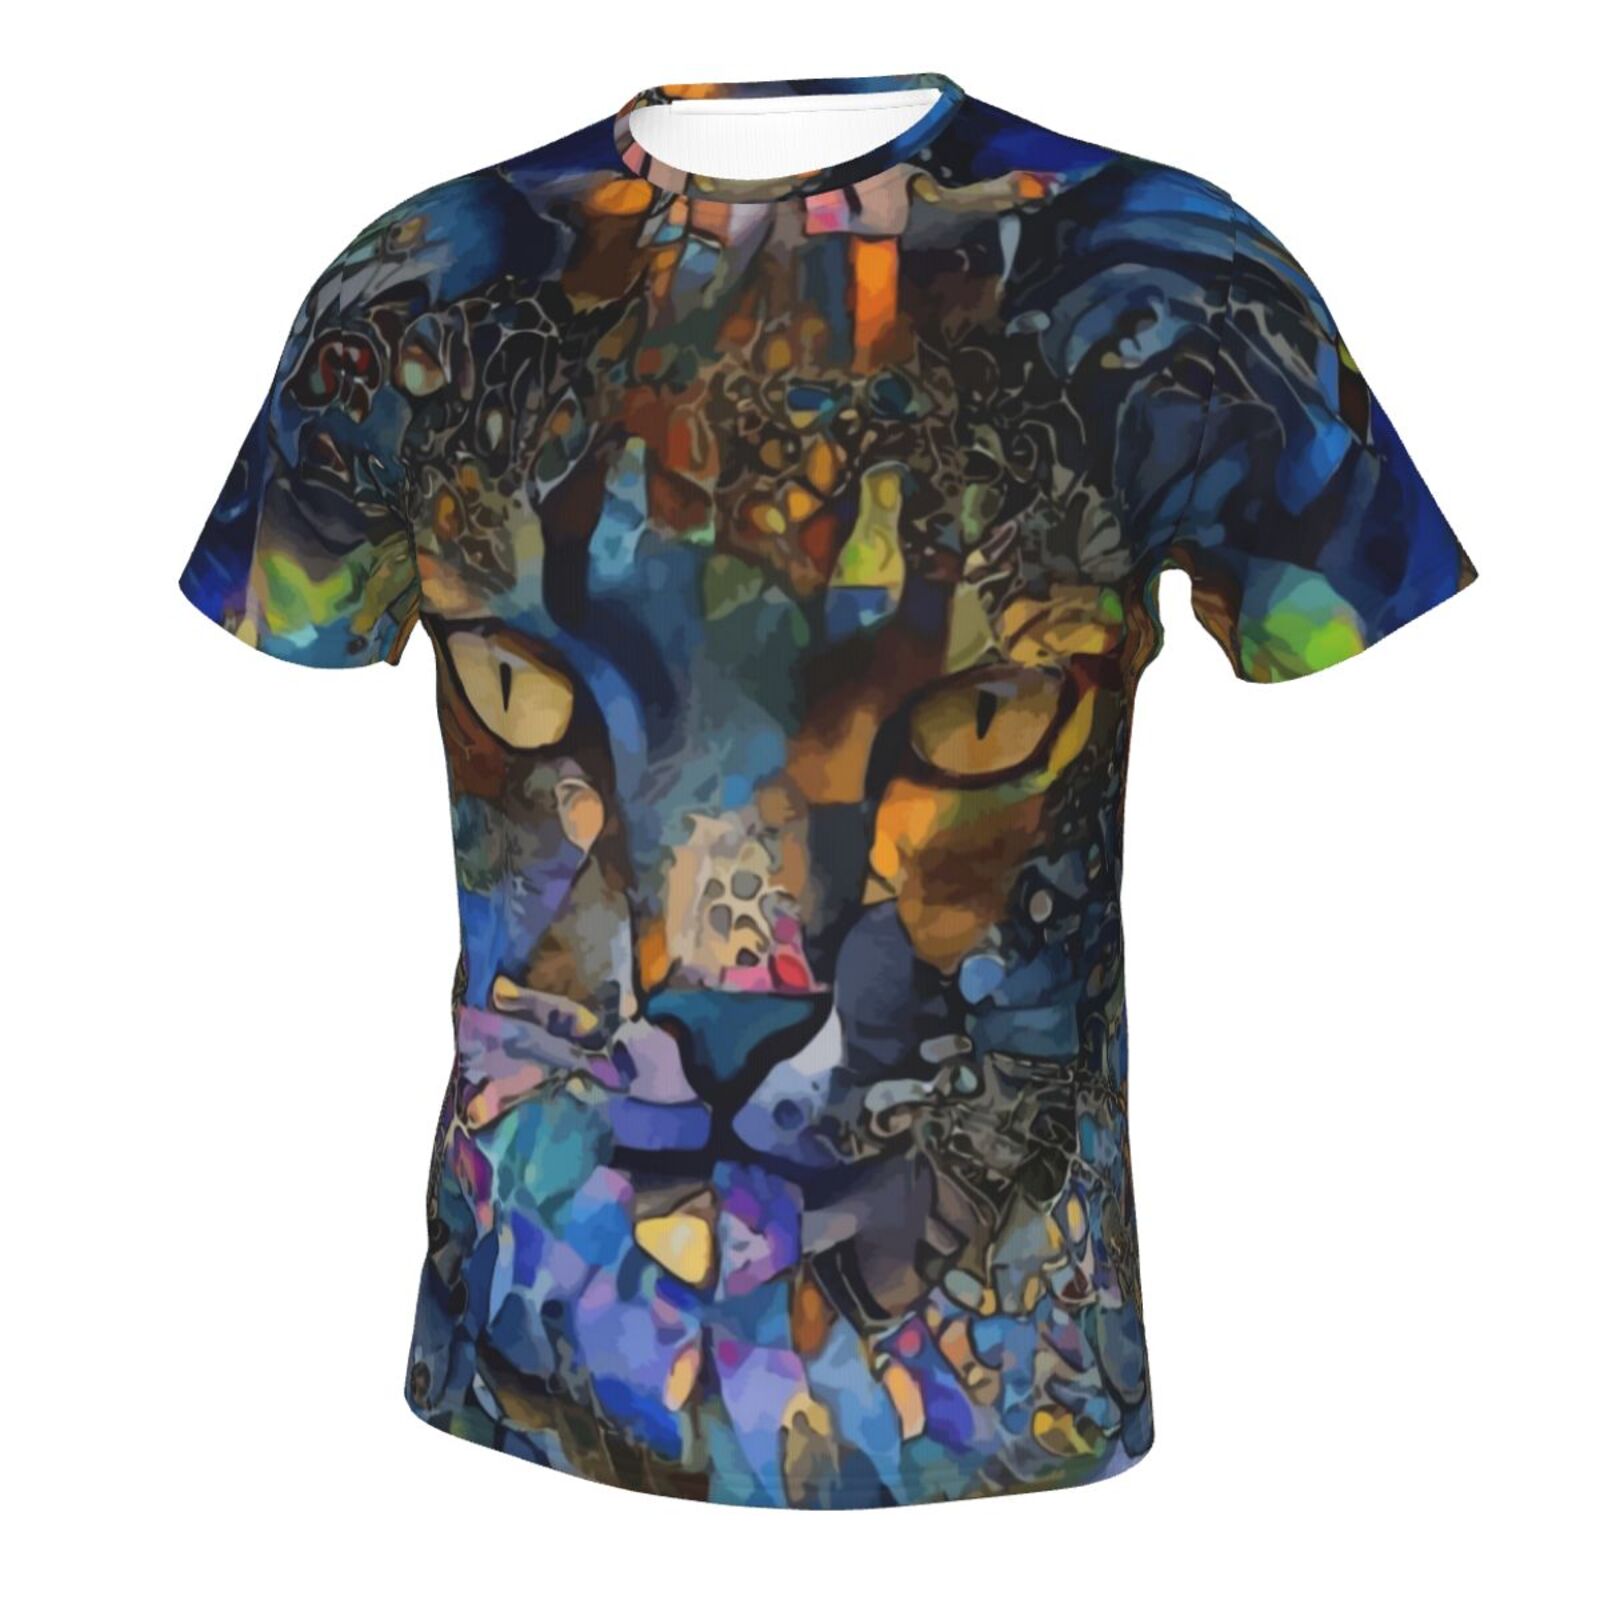 Kanda Katze Medien Mischen Elemente Klassisch T Shirt